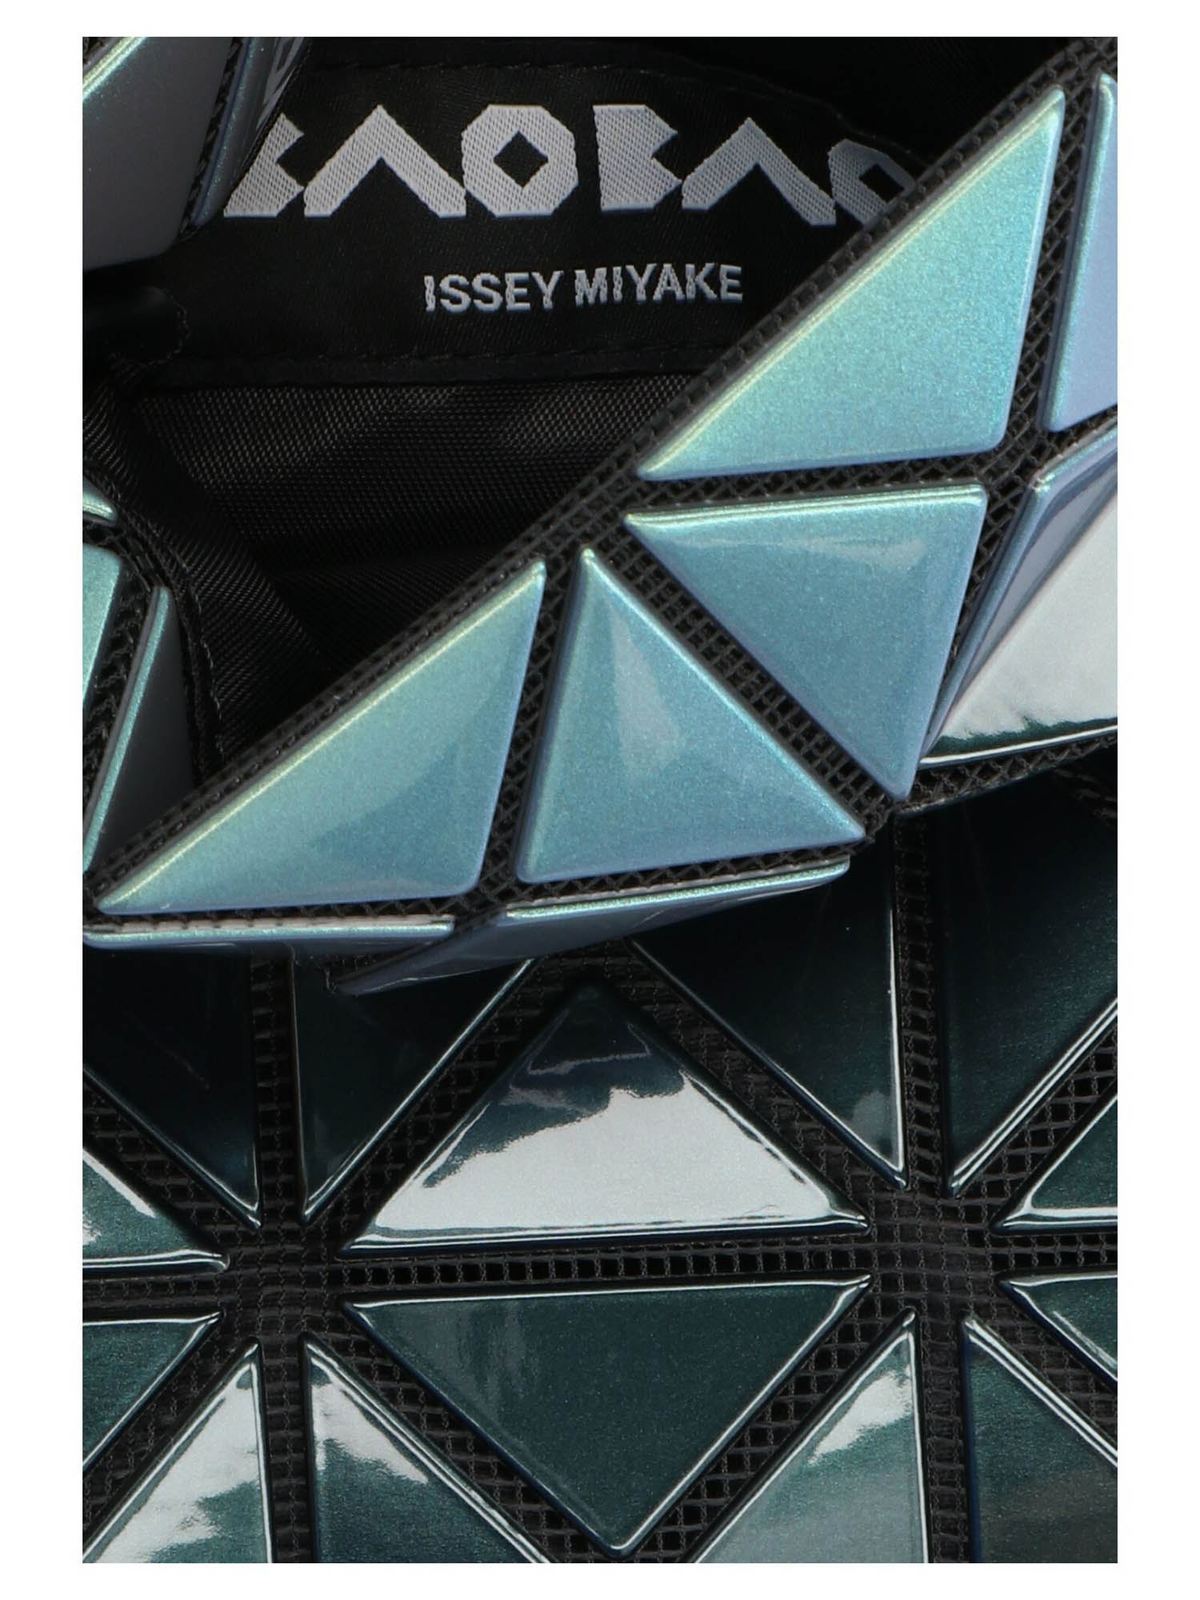 Cross body bags Bao Bao Issey Miyake - Platinum Mermaid crossbody